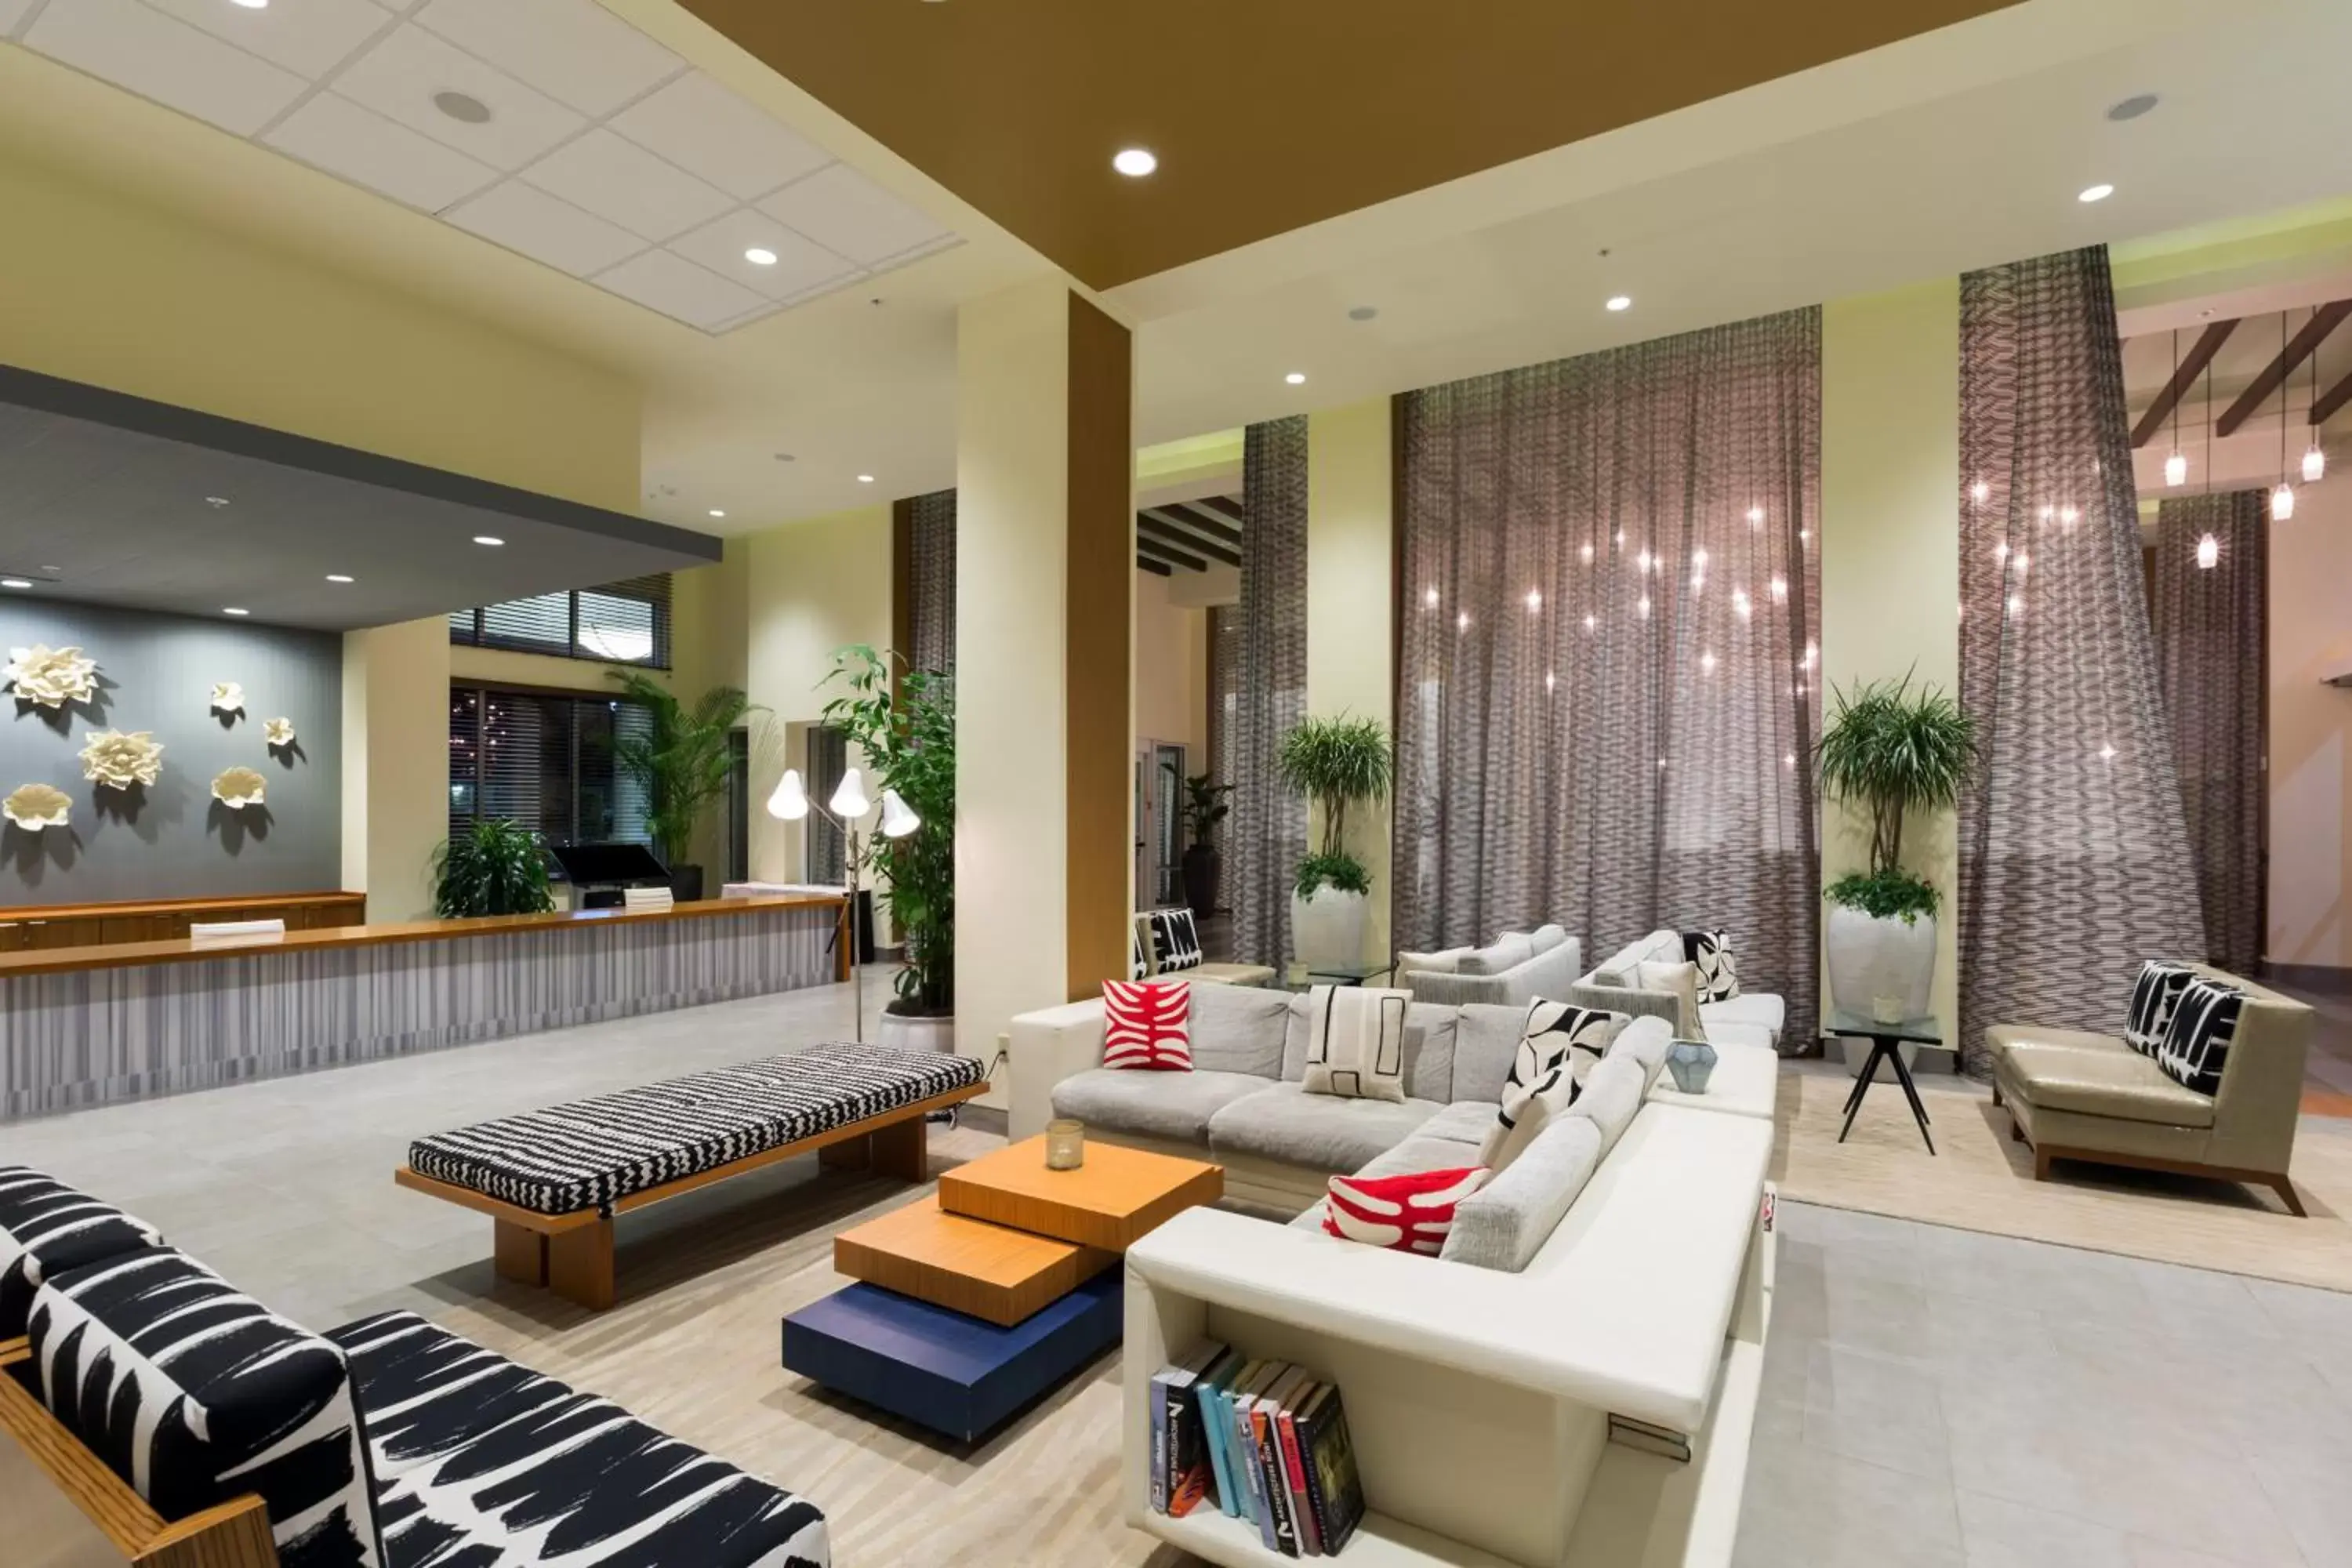 Lobby or reception, Lobby/Reception in Wyndham Orlando Resort International Drive